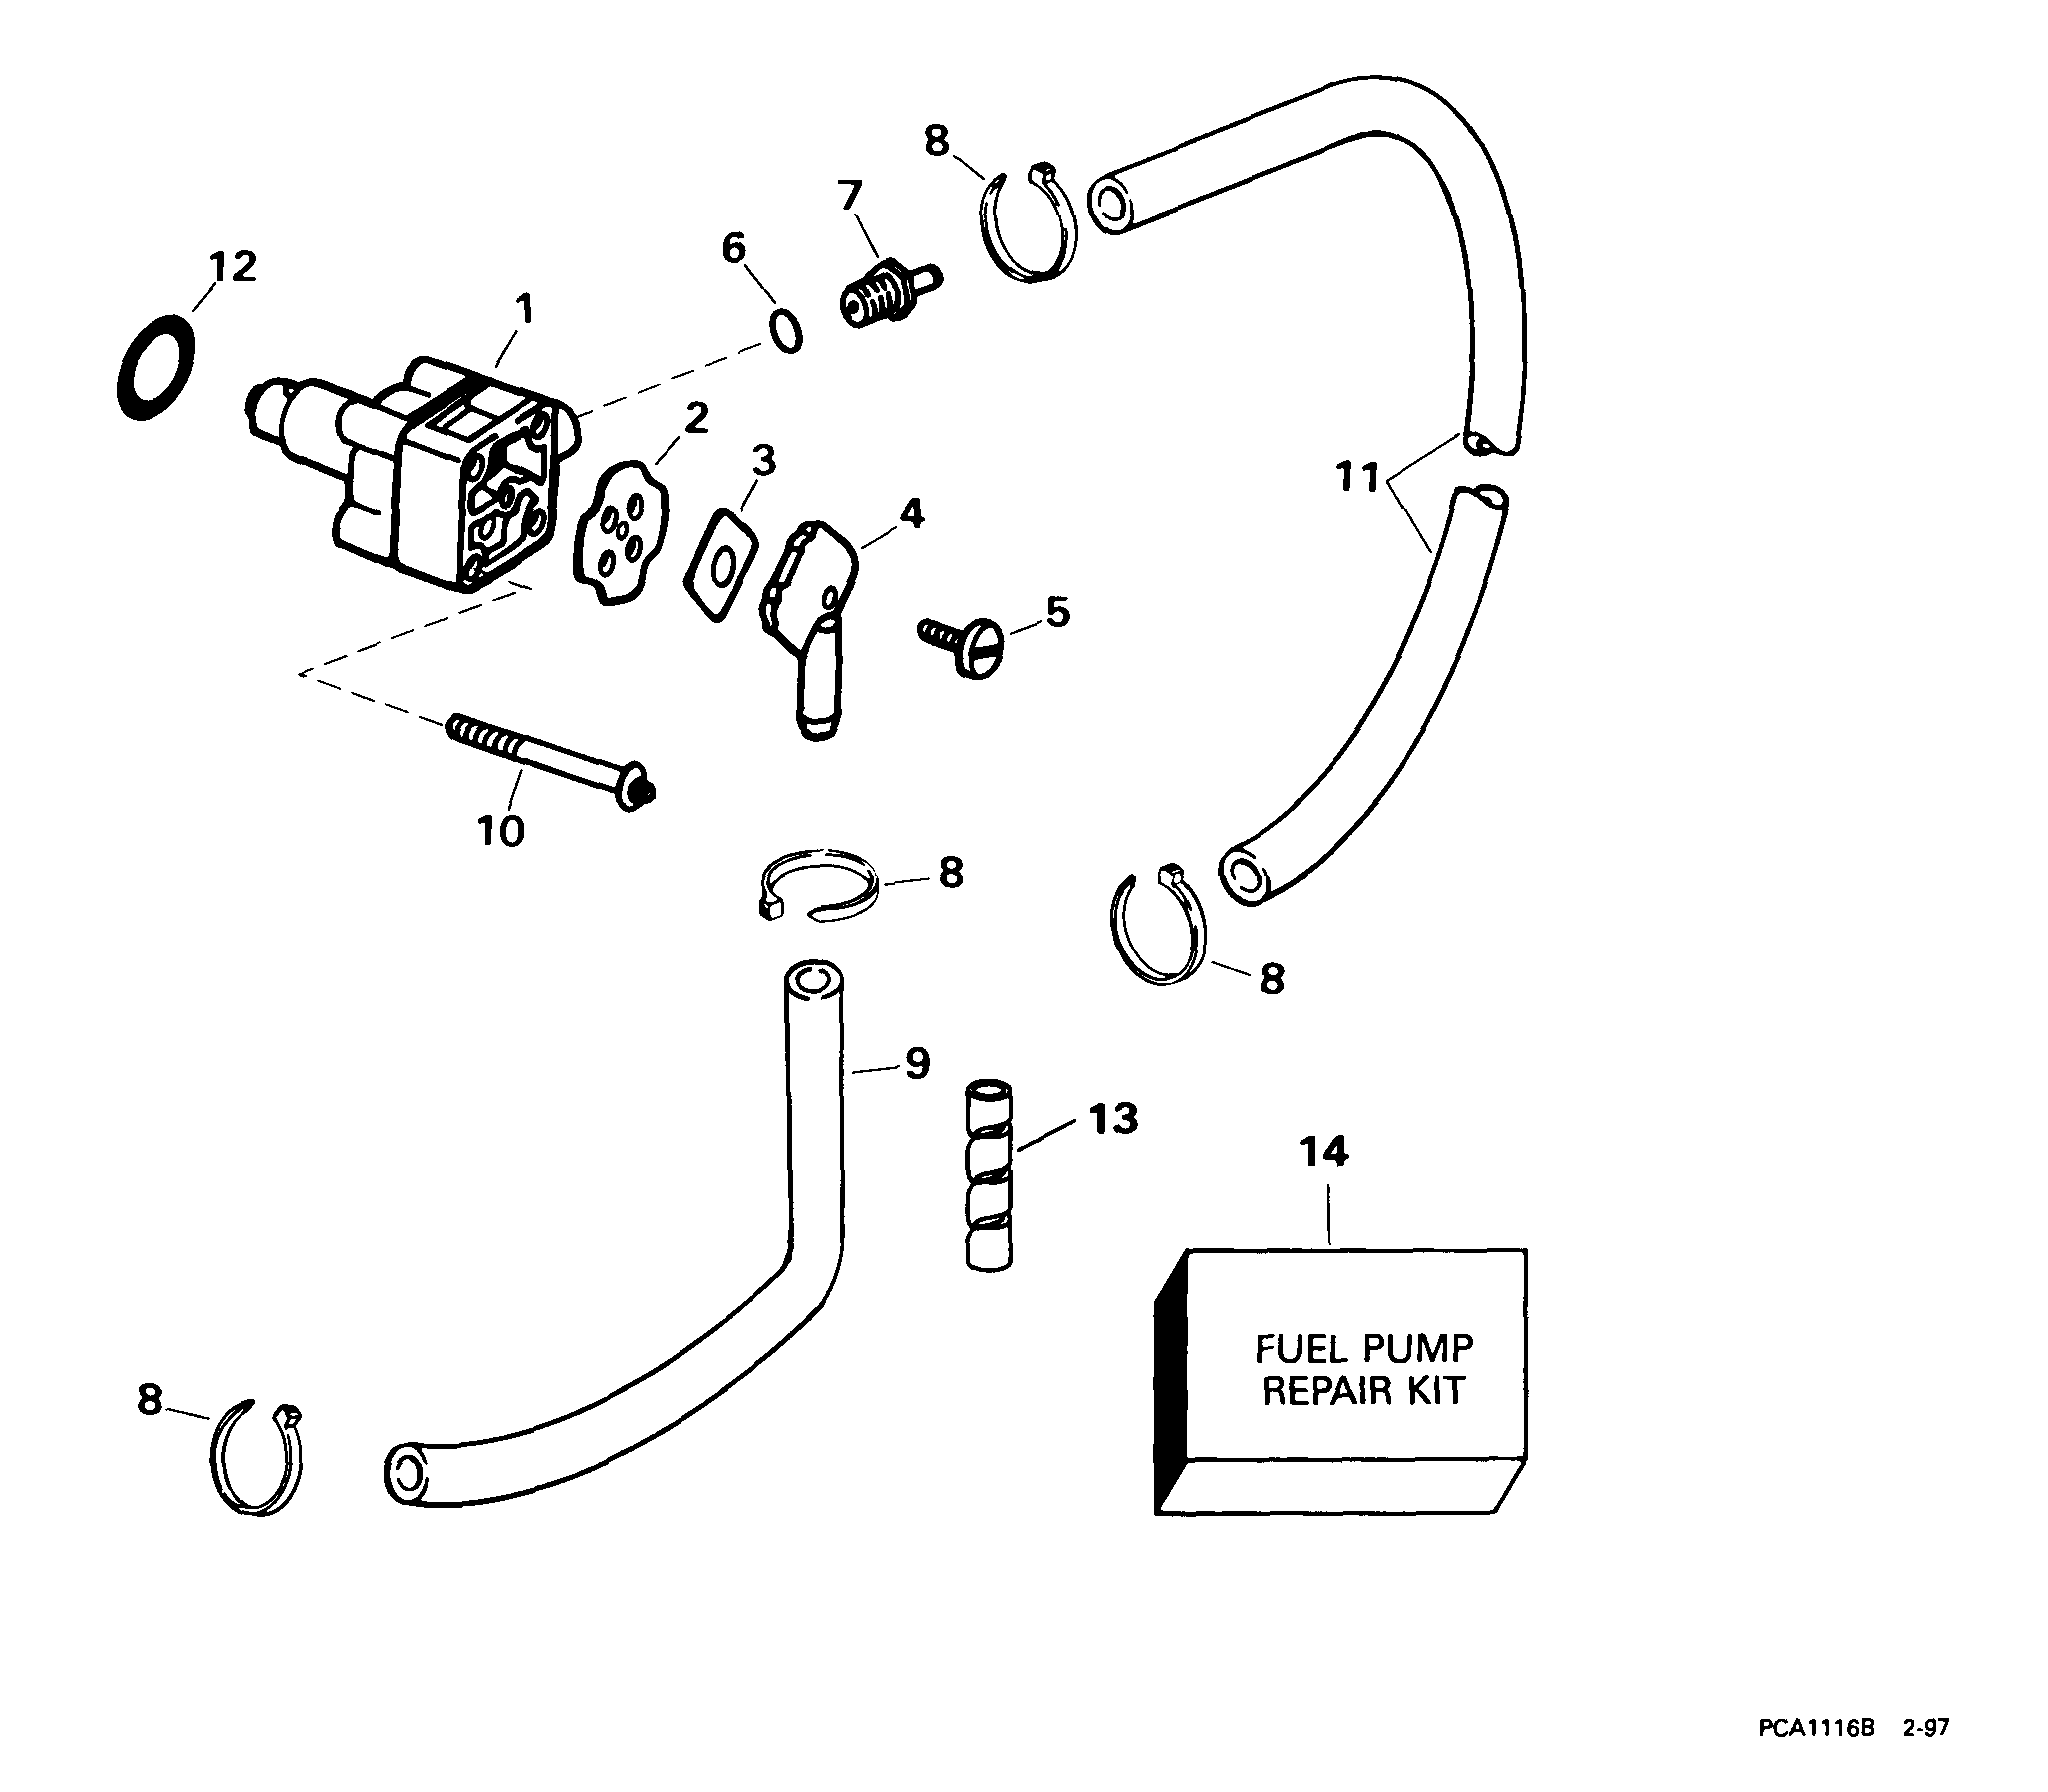 Evinrude fuel pump diagram